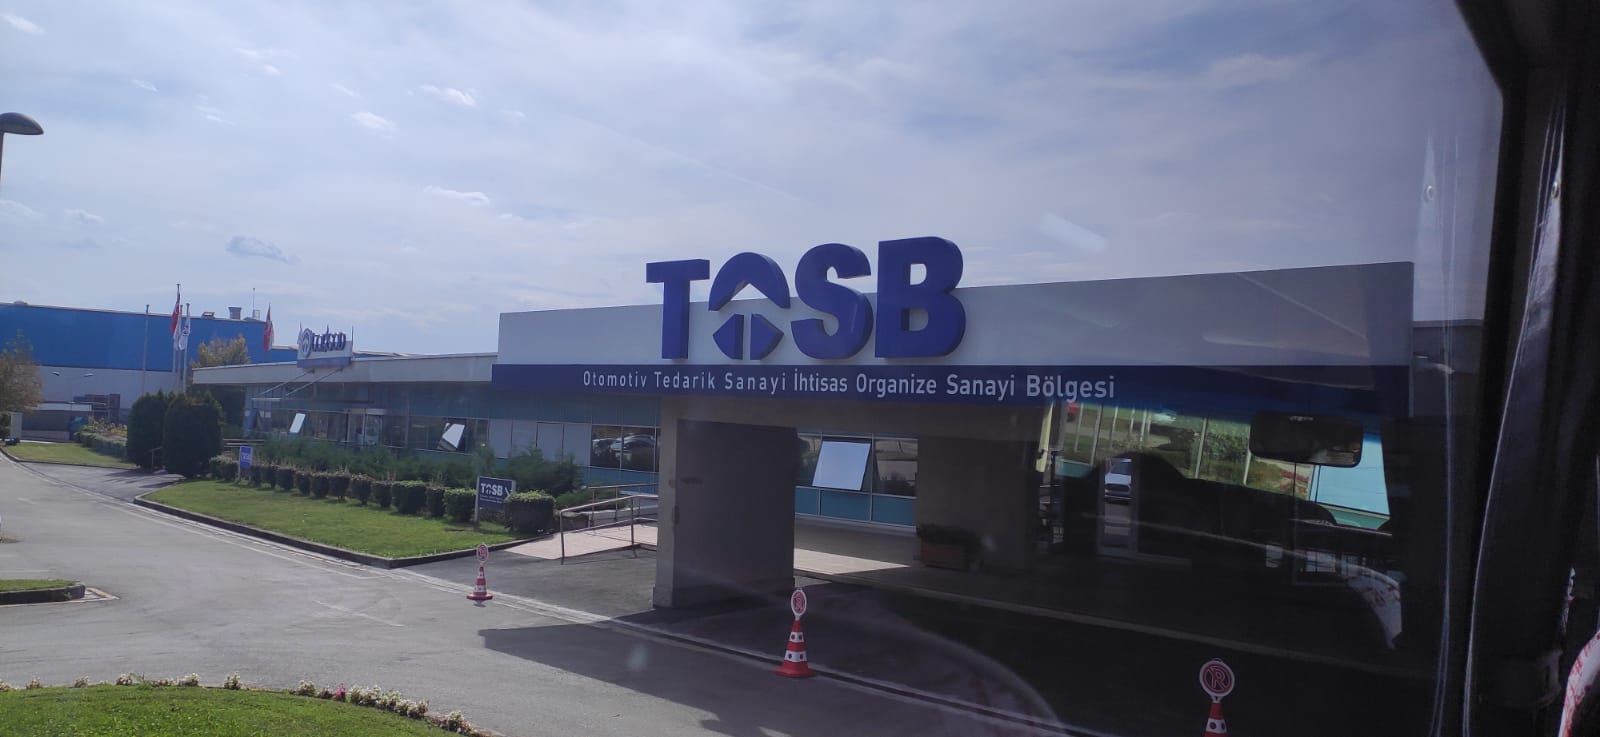 Automotive: viaggio nei laboratori all’avanguardia della Turchia